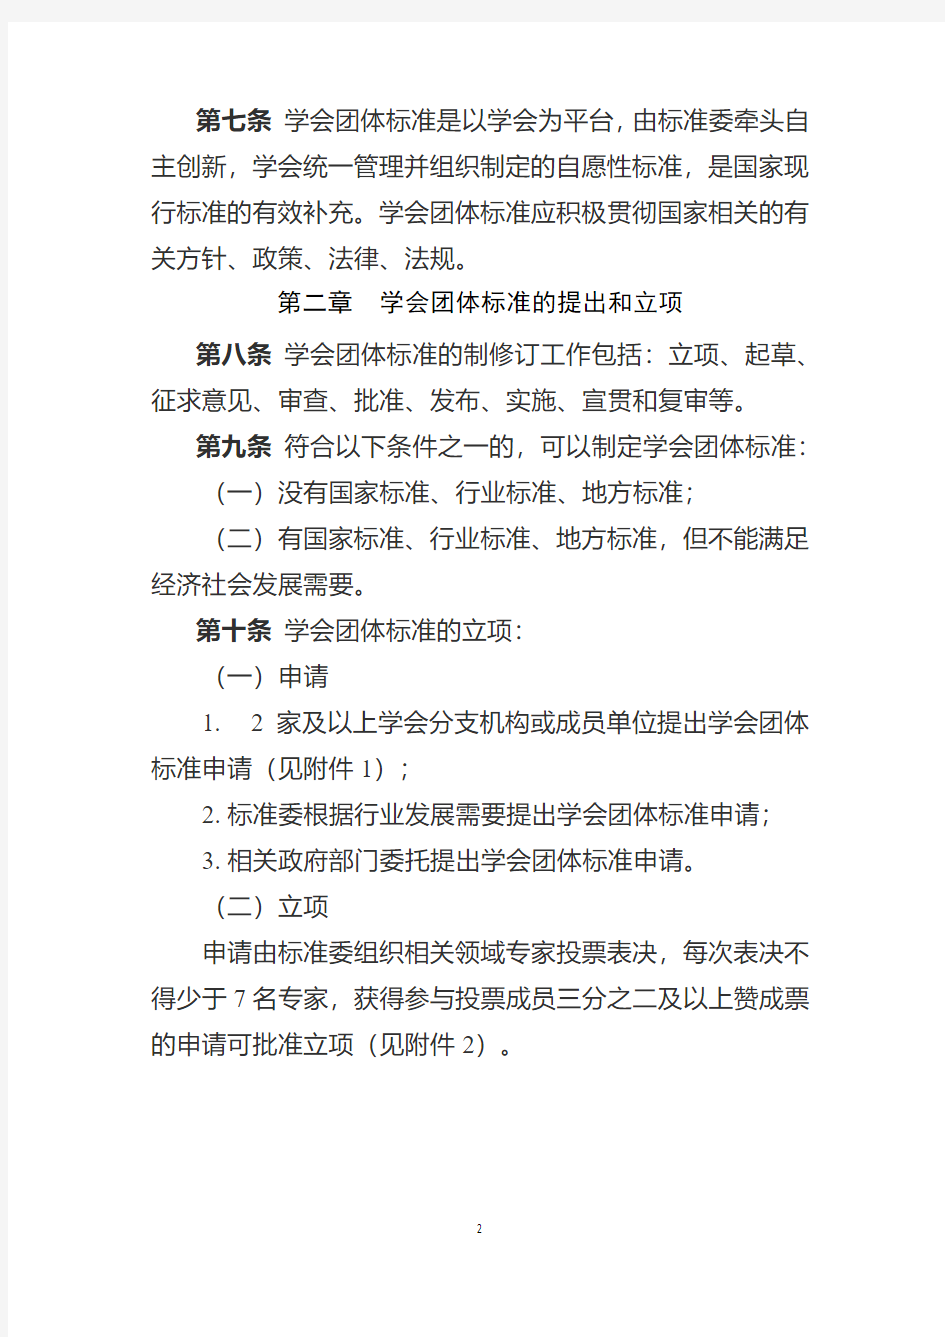 中国心理学会团体标准管理办法(试行)